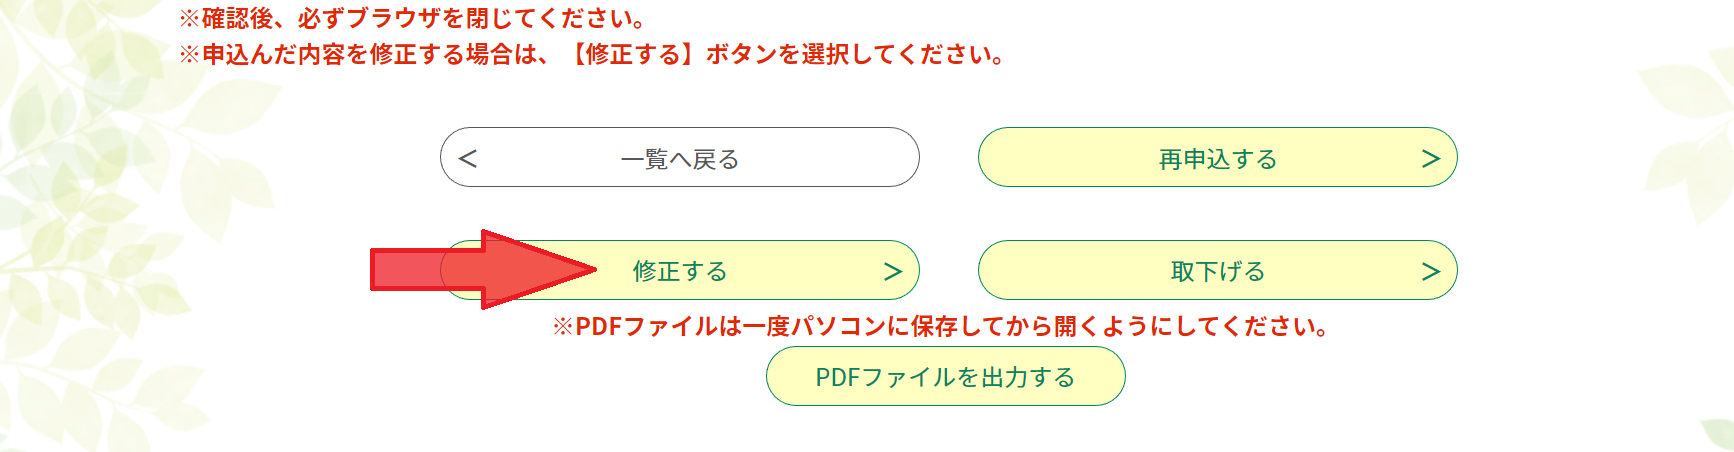 三重県電子申請・「修正する」ボタン